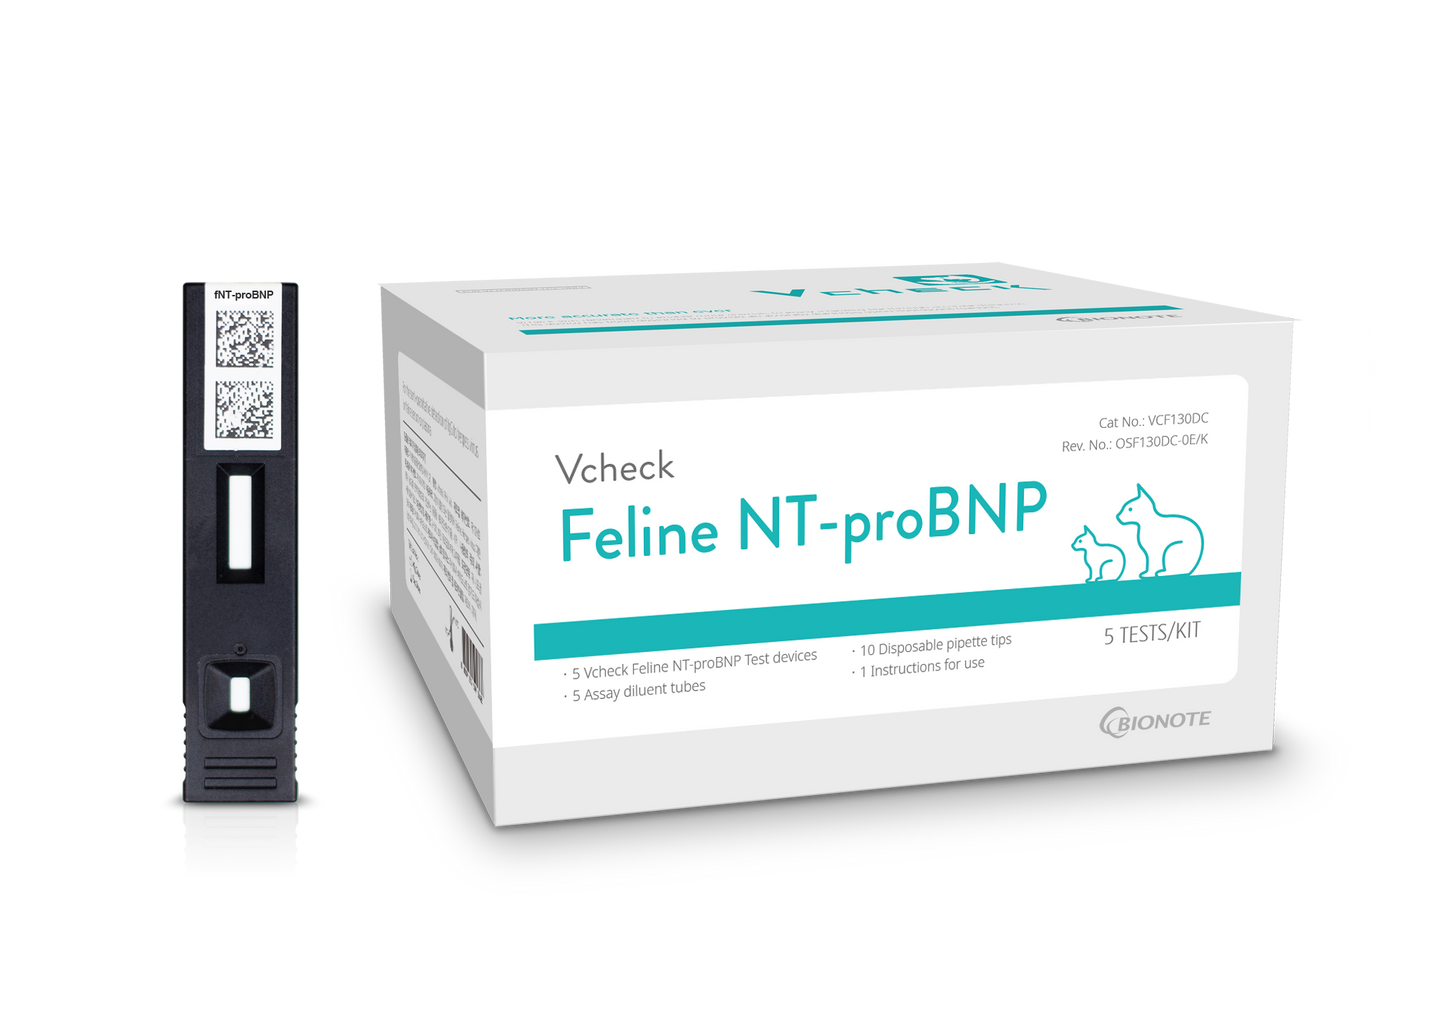 Vcheck Feline NT-proBNP, 5 testiä